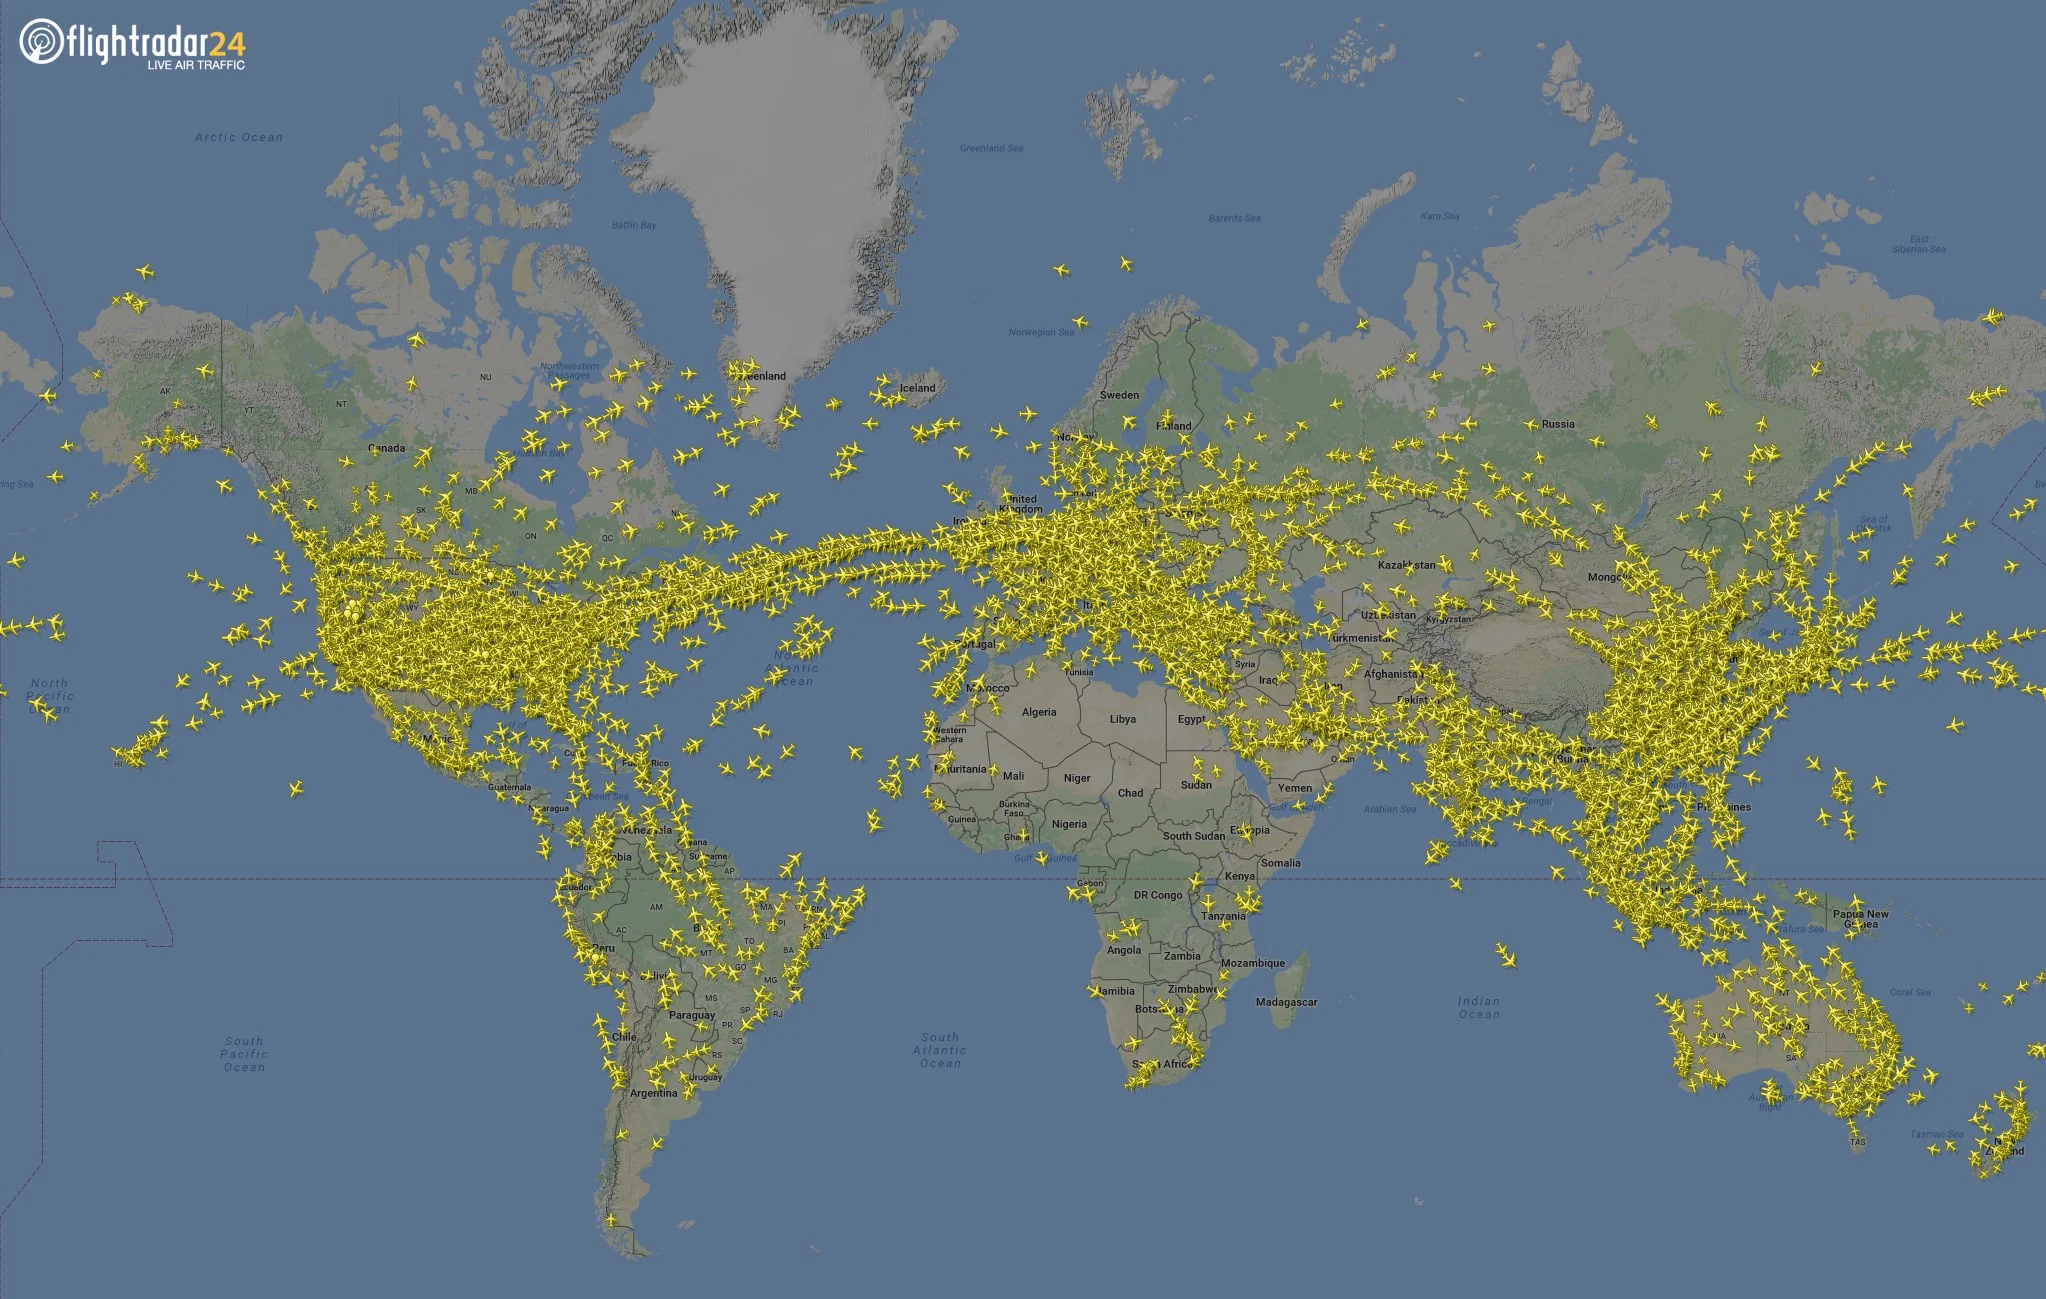 flightradar24-global-coverage